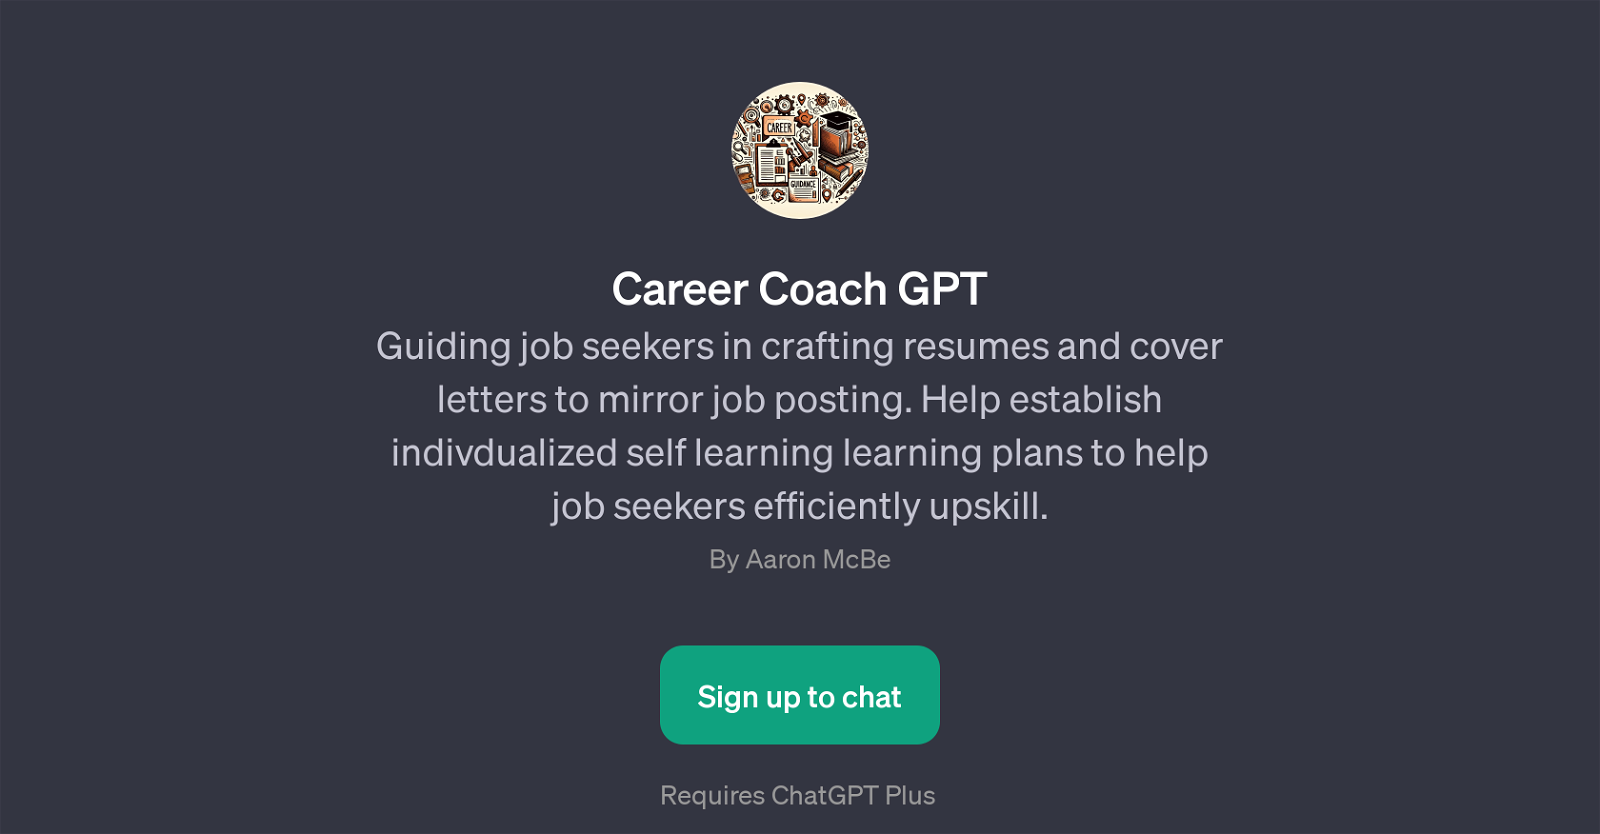 Career Coach GPT website